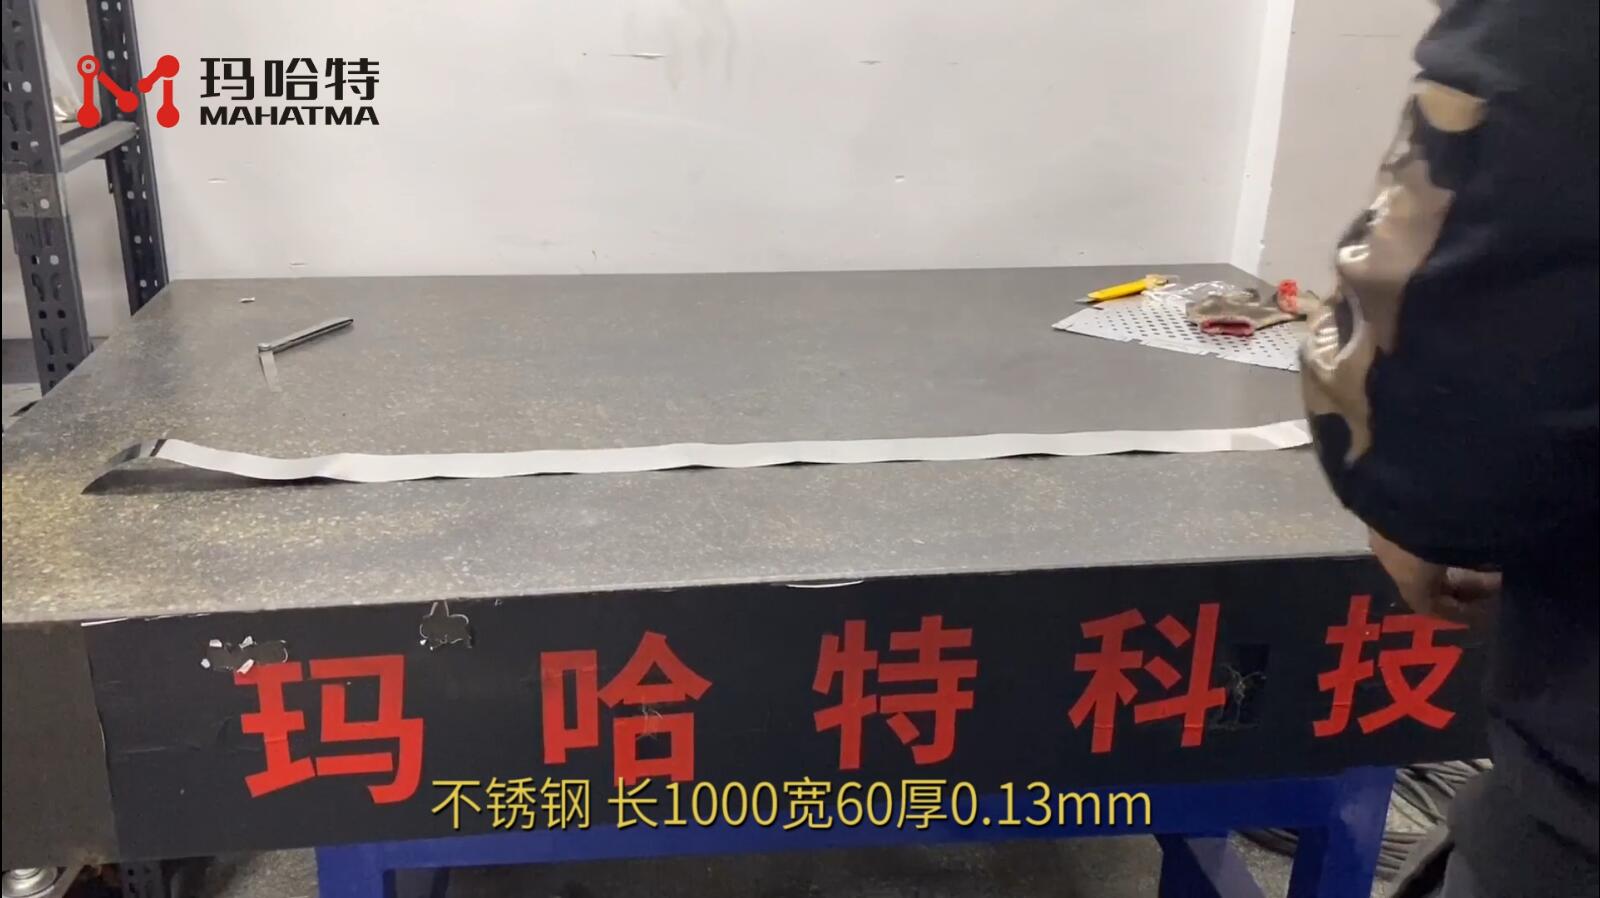 不锈钢 MHT15-150 长方形 长1000宽60厚0.13mm